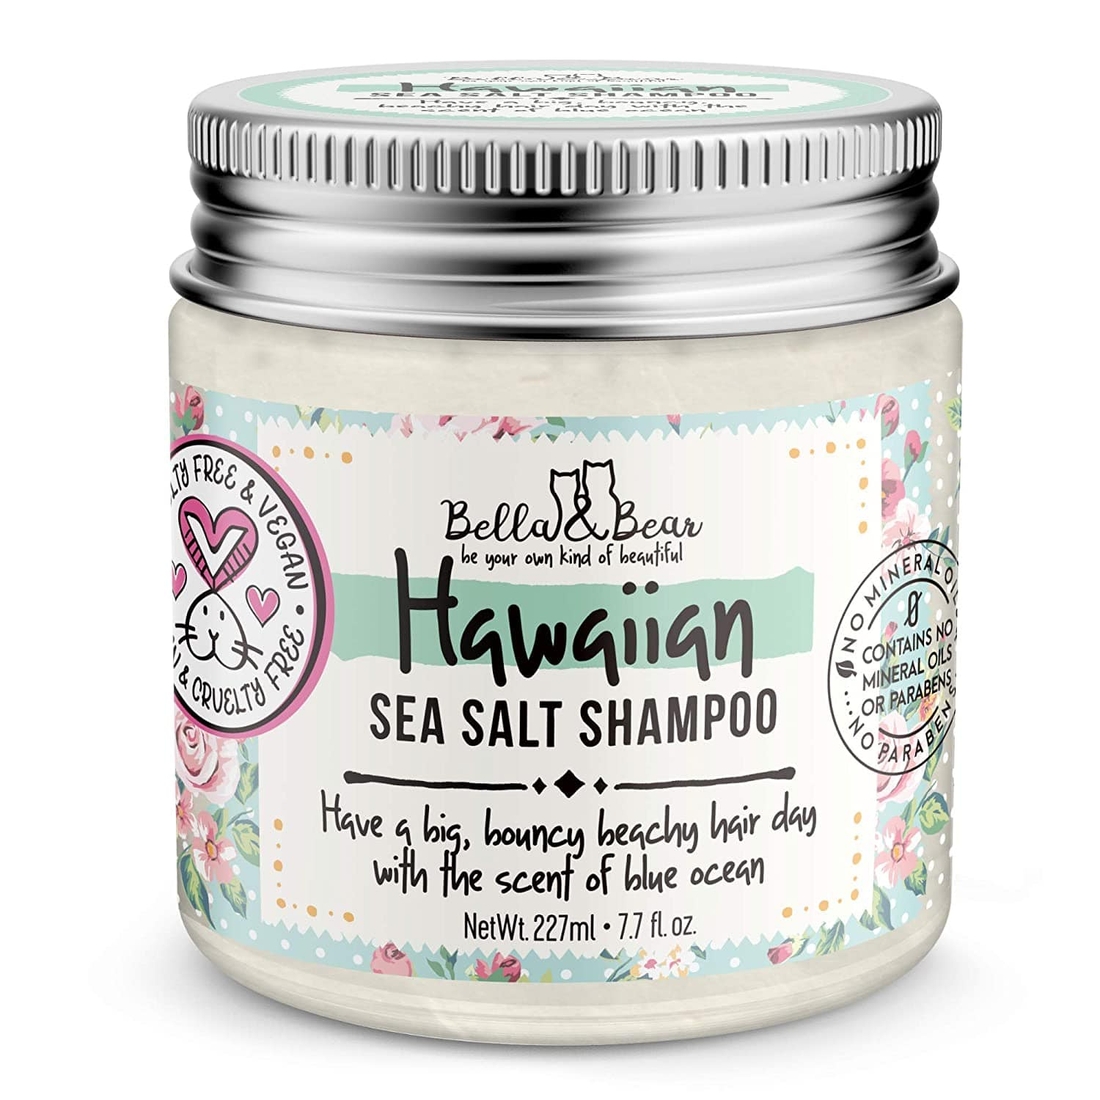 Hawaiian Sea Salt Shampoo